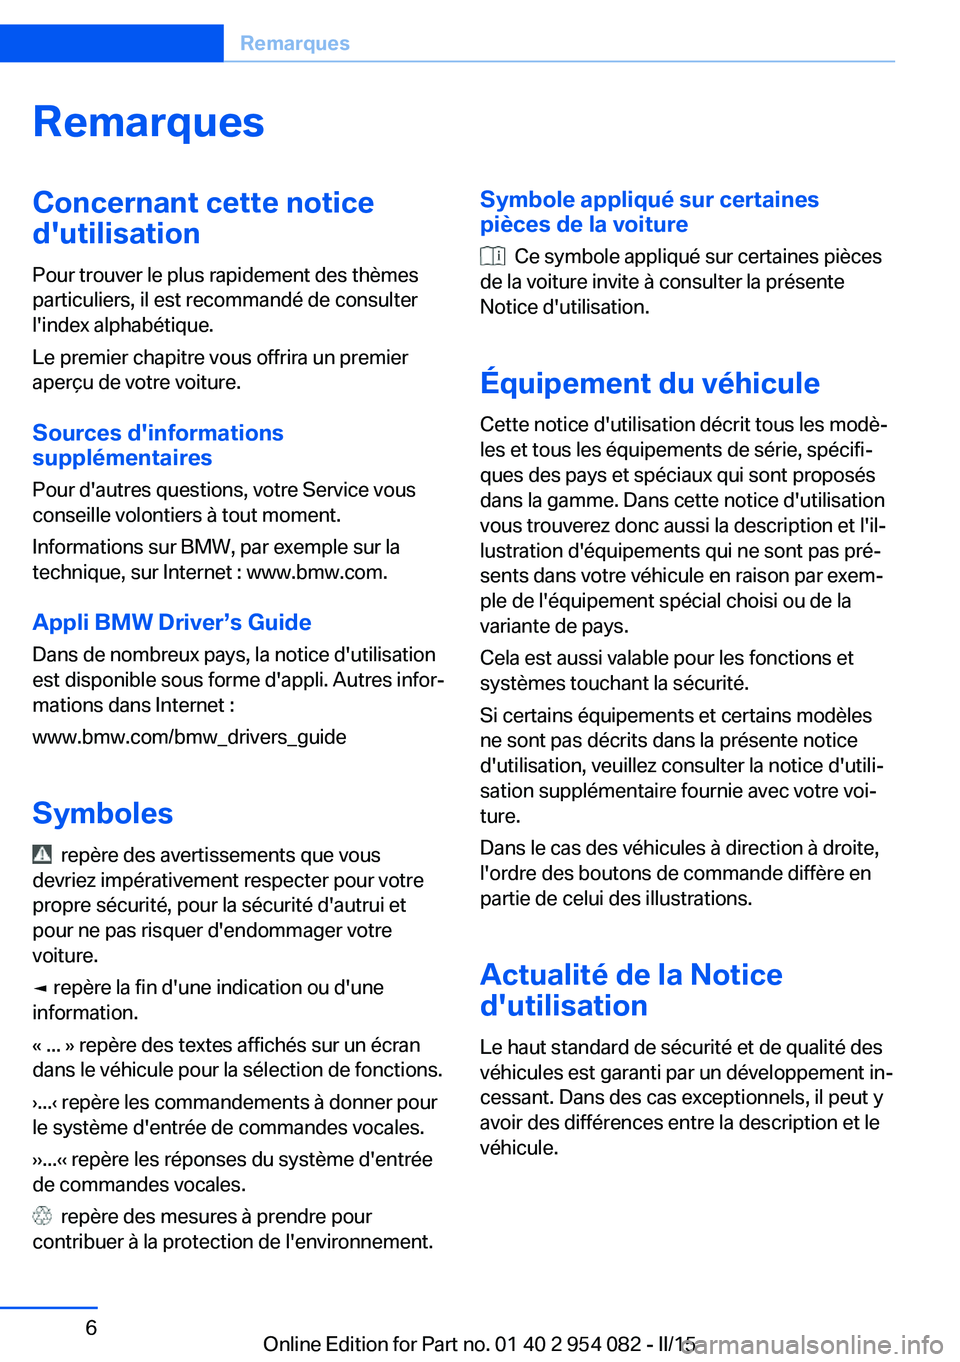 BMW Z4 2016  Notices Demploi (in French) RemarquesConcernant cette notice
d'utilisation
Pour trouver le plus rapidement des thèmes
particuliers, il est recommandé de consulter
l'index alphabétique.
Le premier chapitre vous offrira